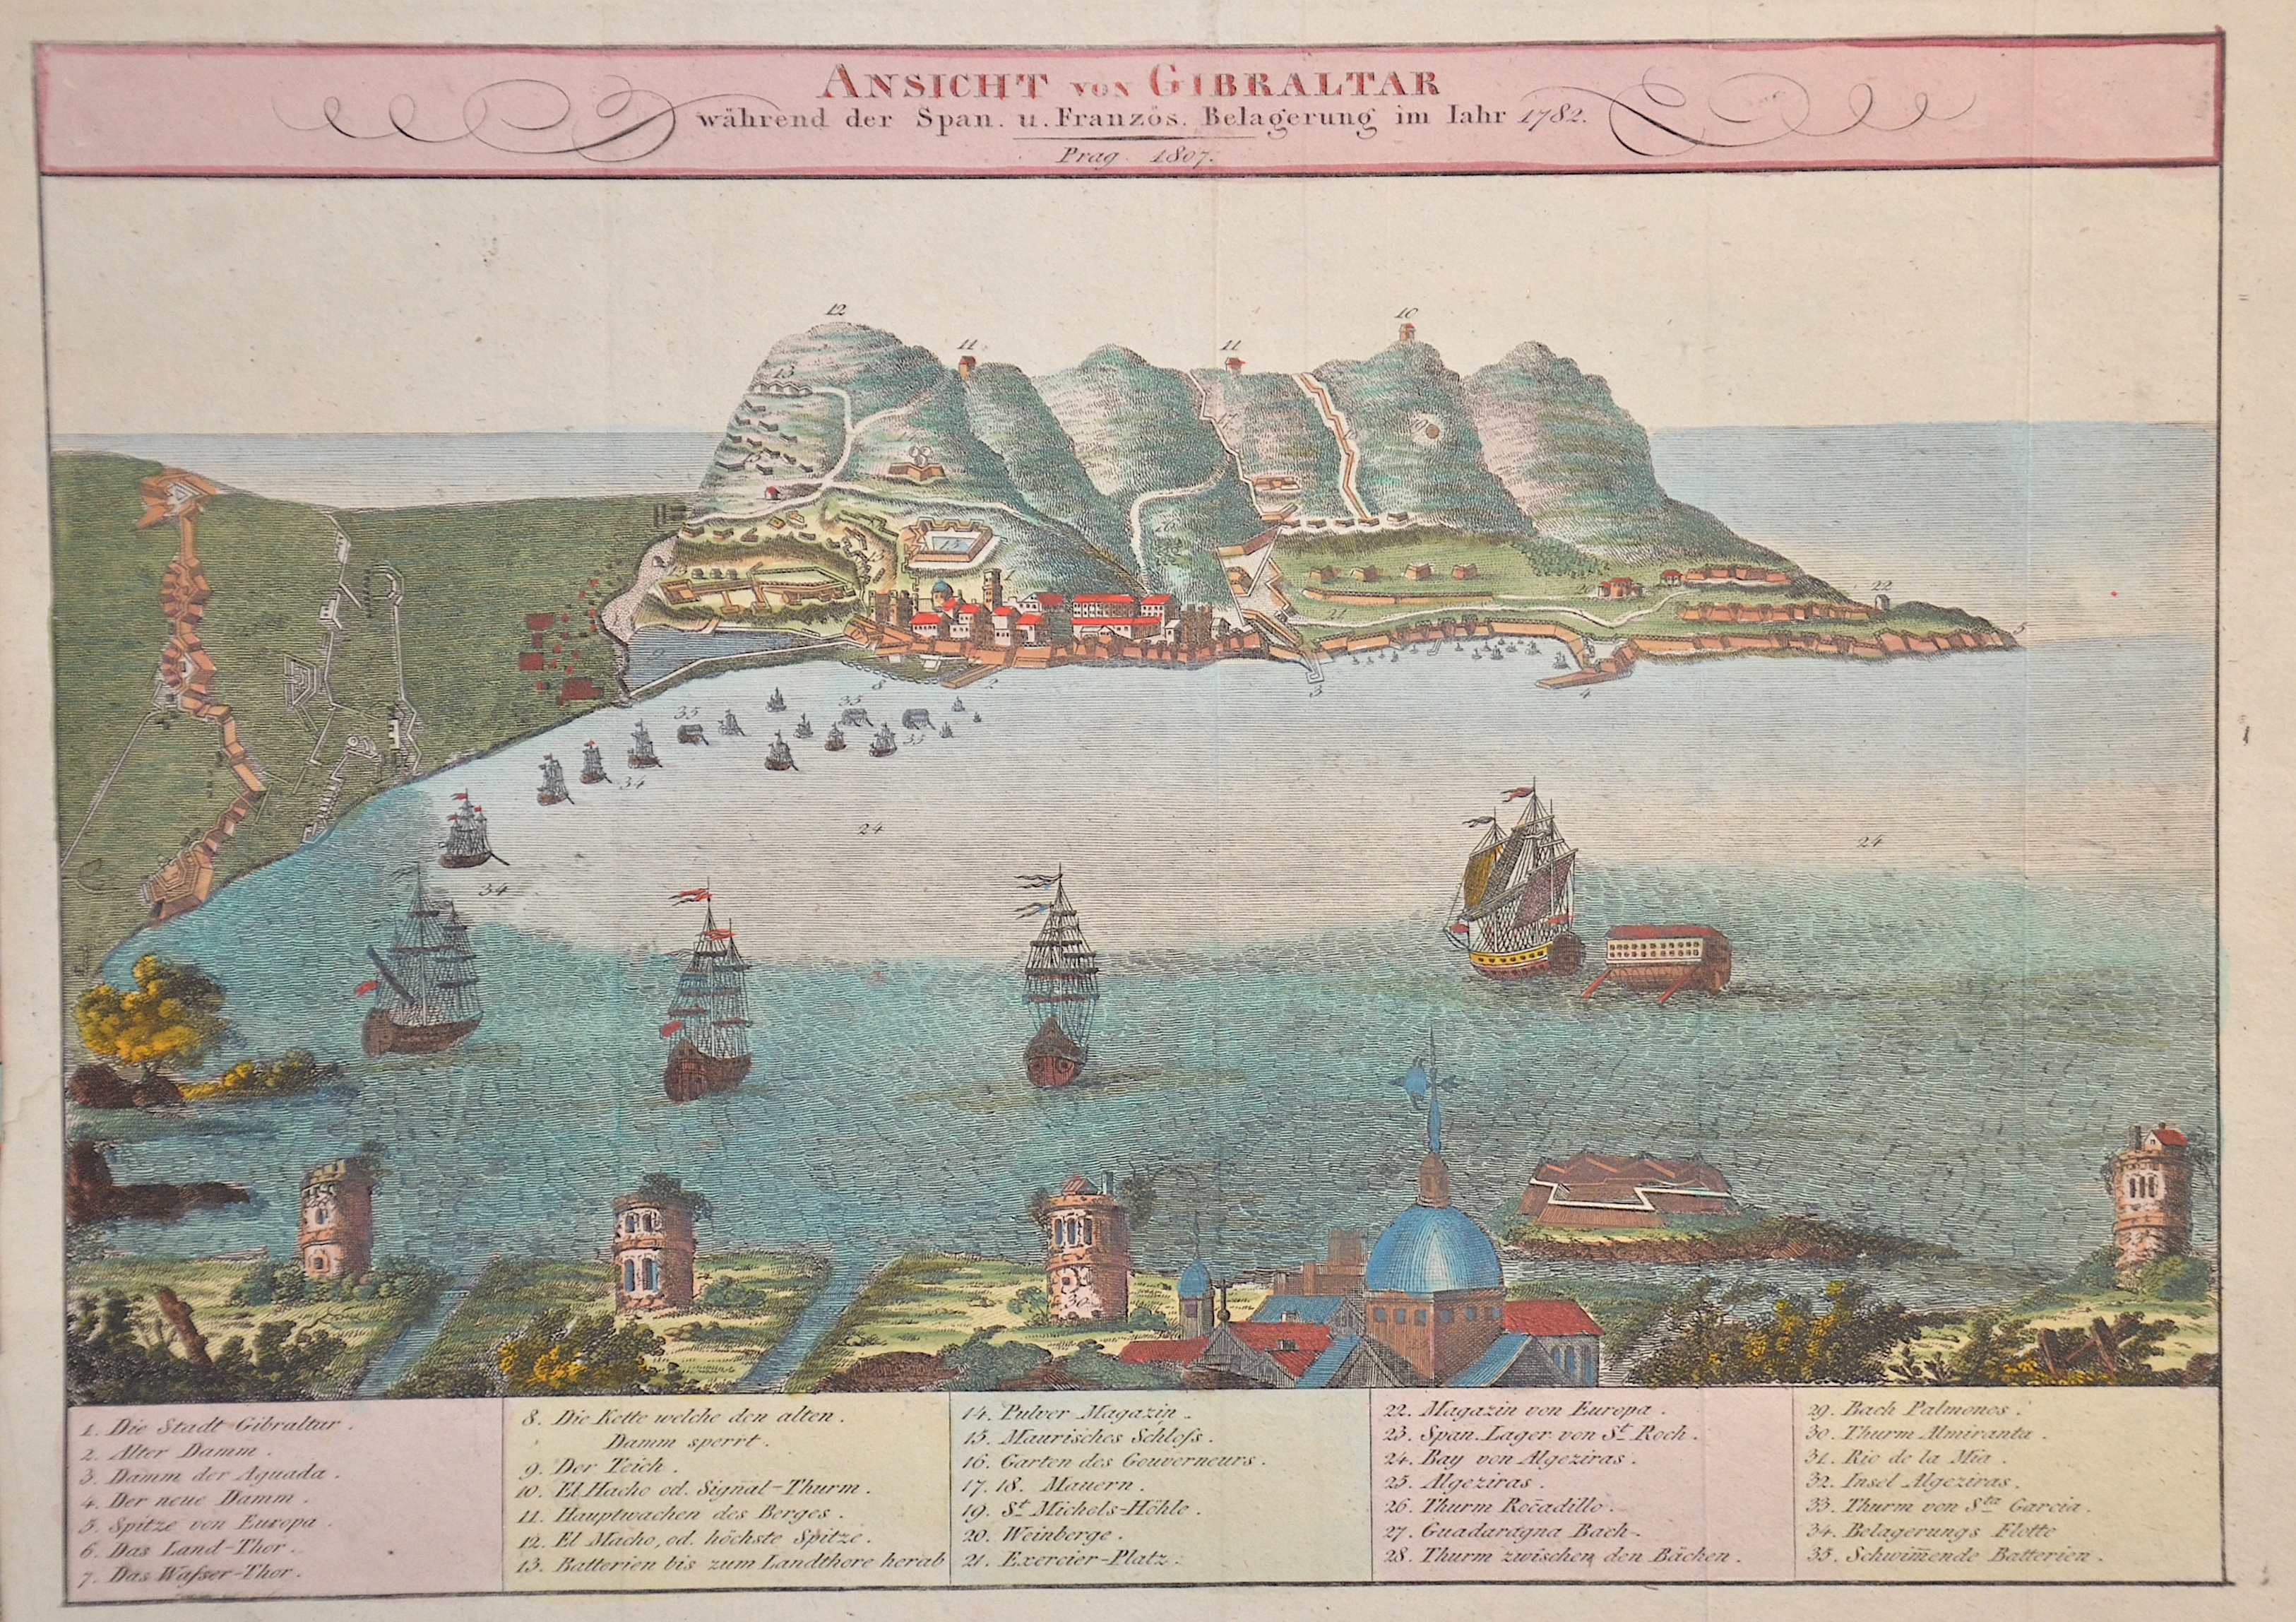 Anonymus  Ansicht von Gibraltar während der Span. U. Französ. Belagerung im Jahr 1782